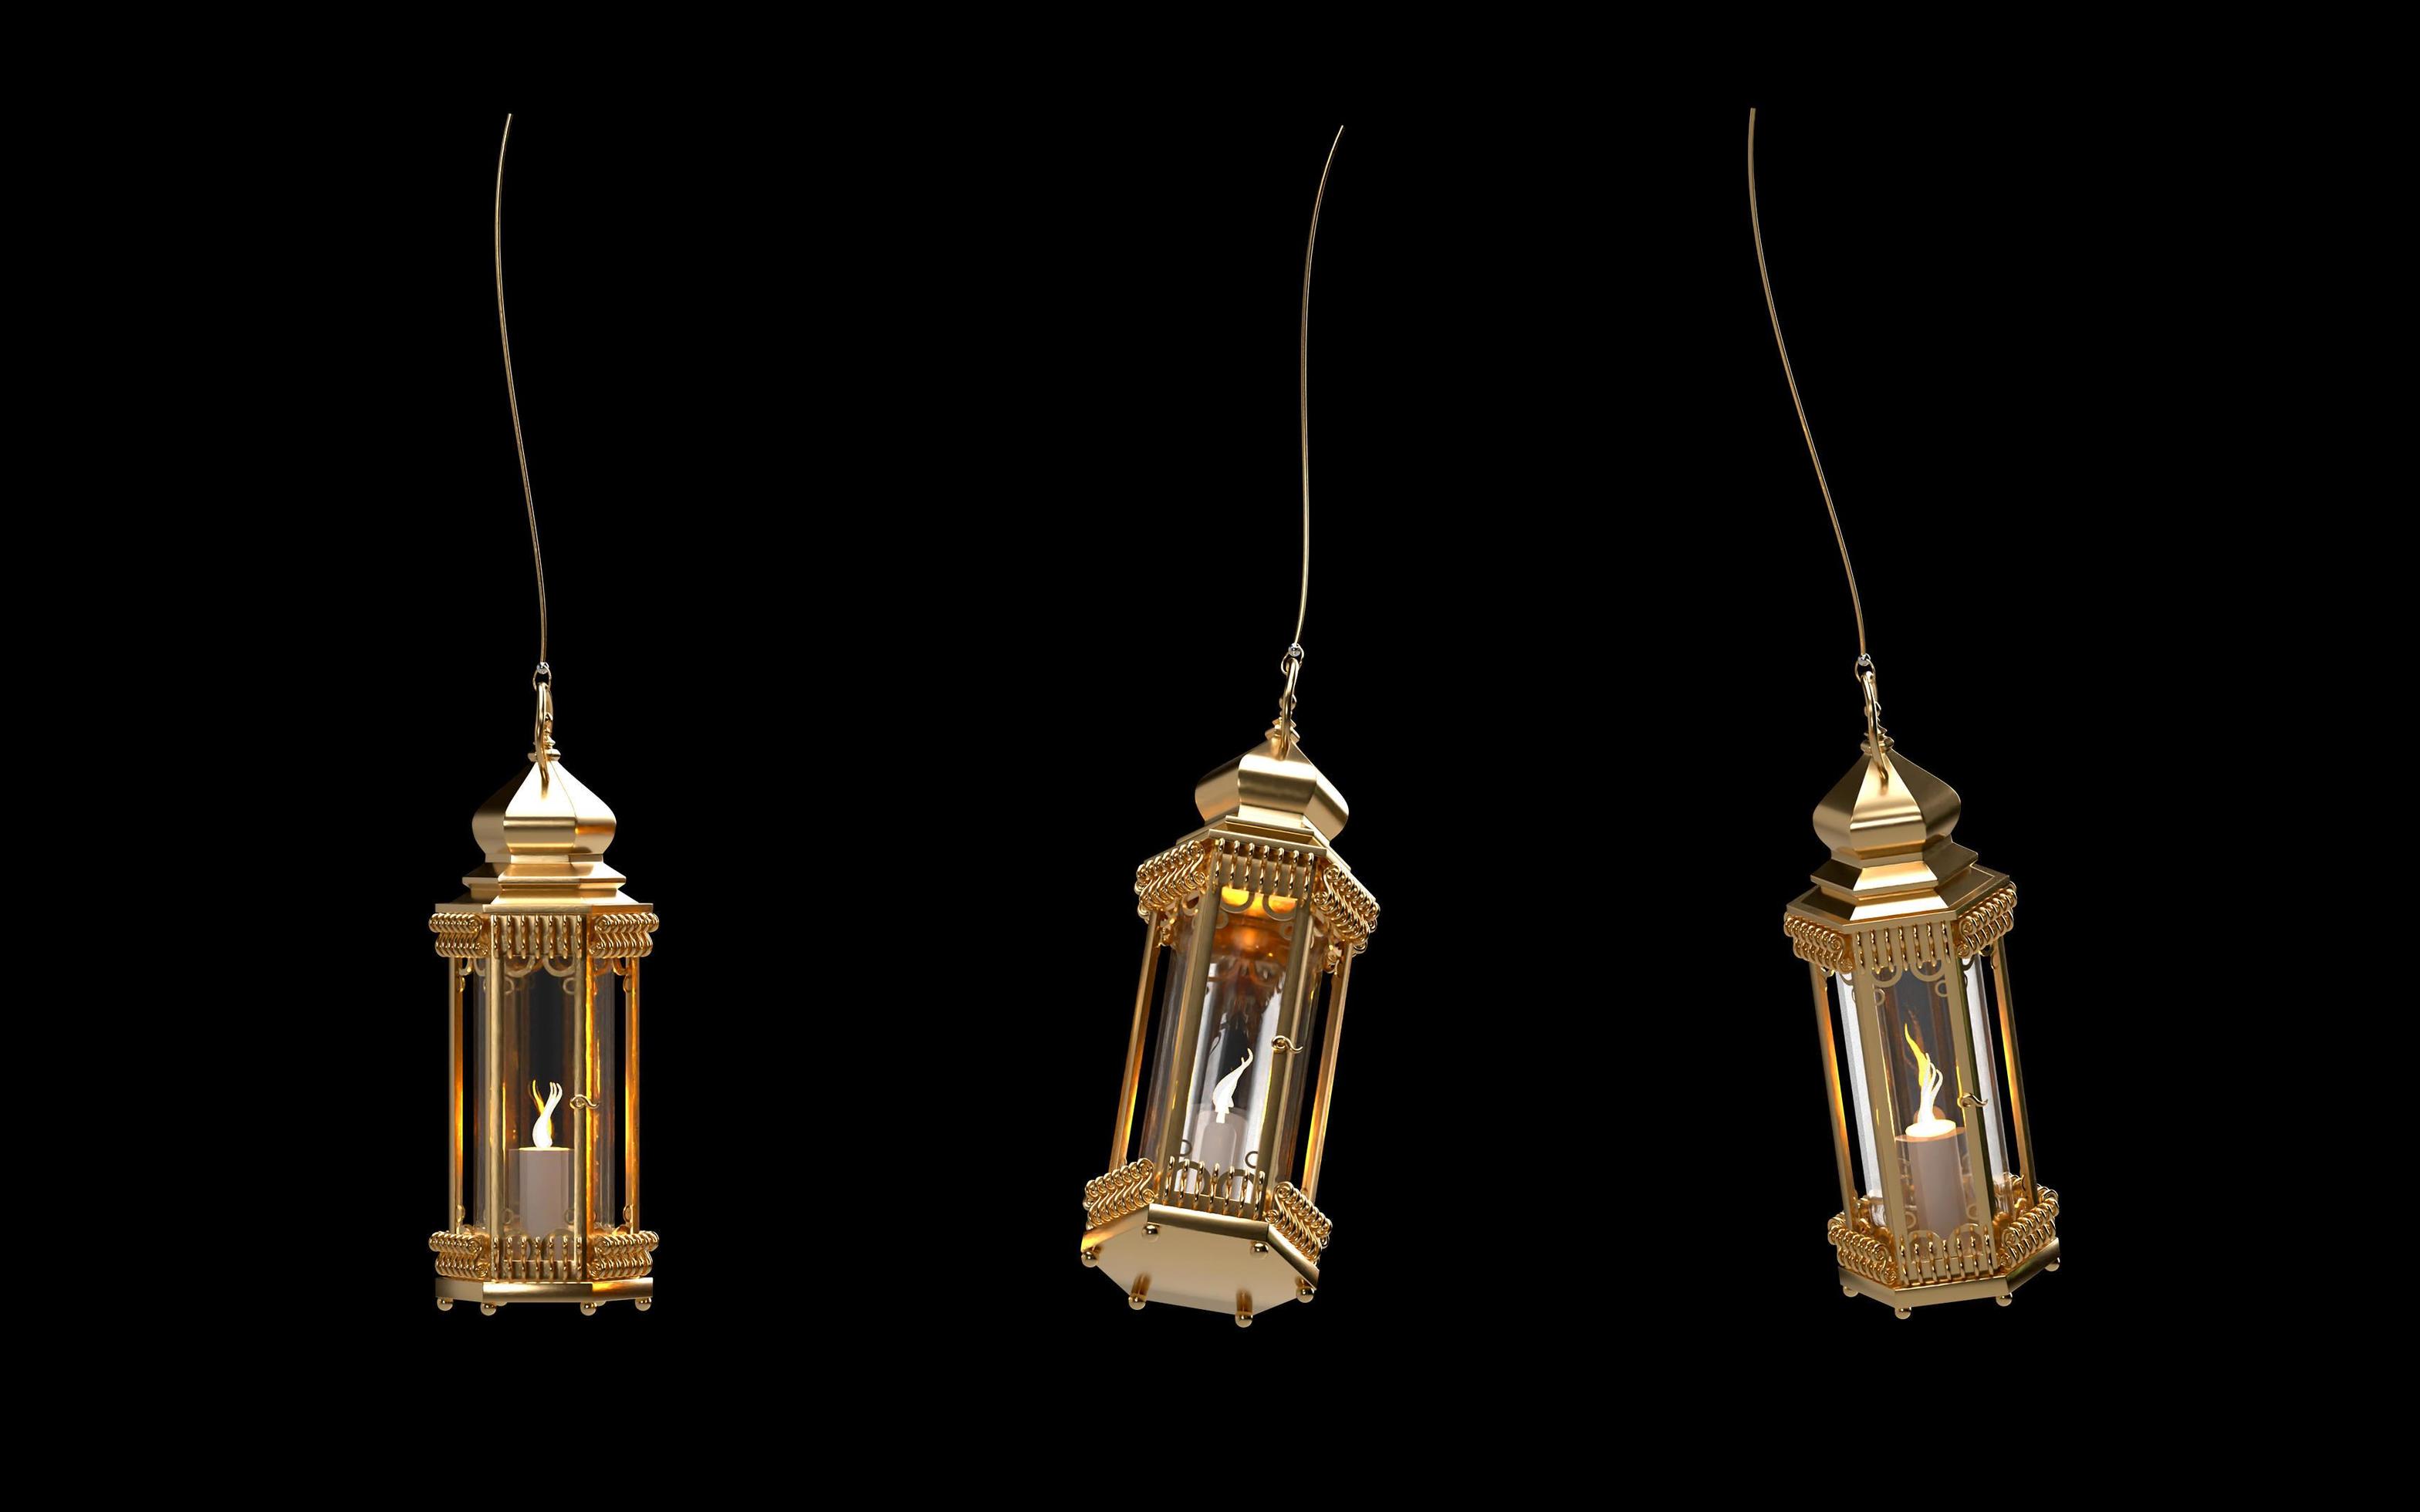 https://static.vecteezy.com/ti/photos-gratuite/p2/6934226-ramadan-kareem-3d-lanterne-suspendue-doree-brillante-avec-bougie-sur-noir-angle-different-gratuit-photo.jpg